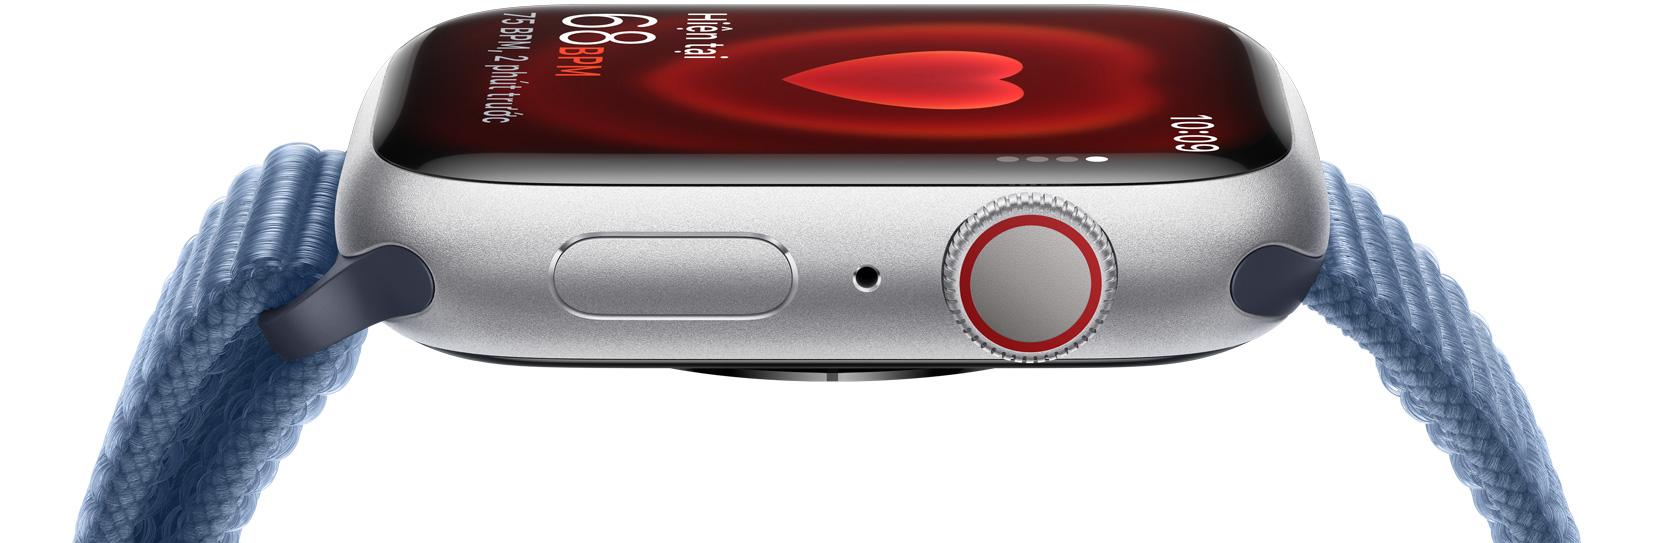 Hình ảnh mặt bên của Apple Watch thể hiện nhịp tim của ai đó.